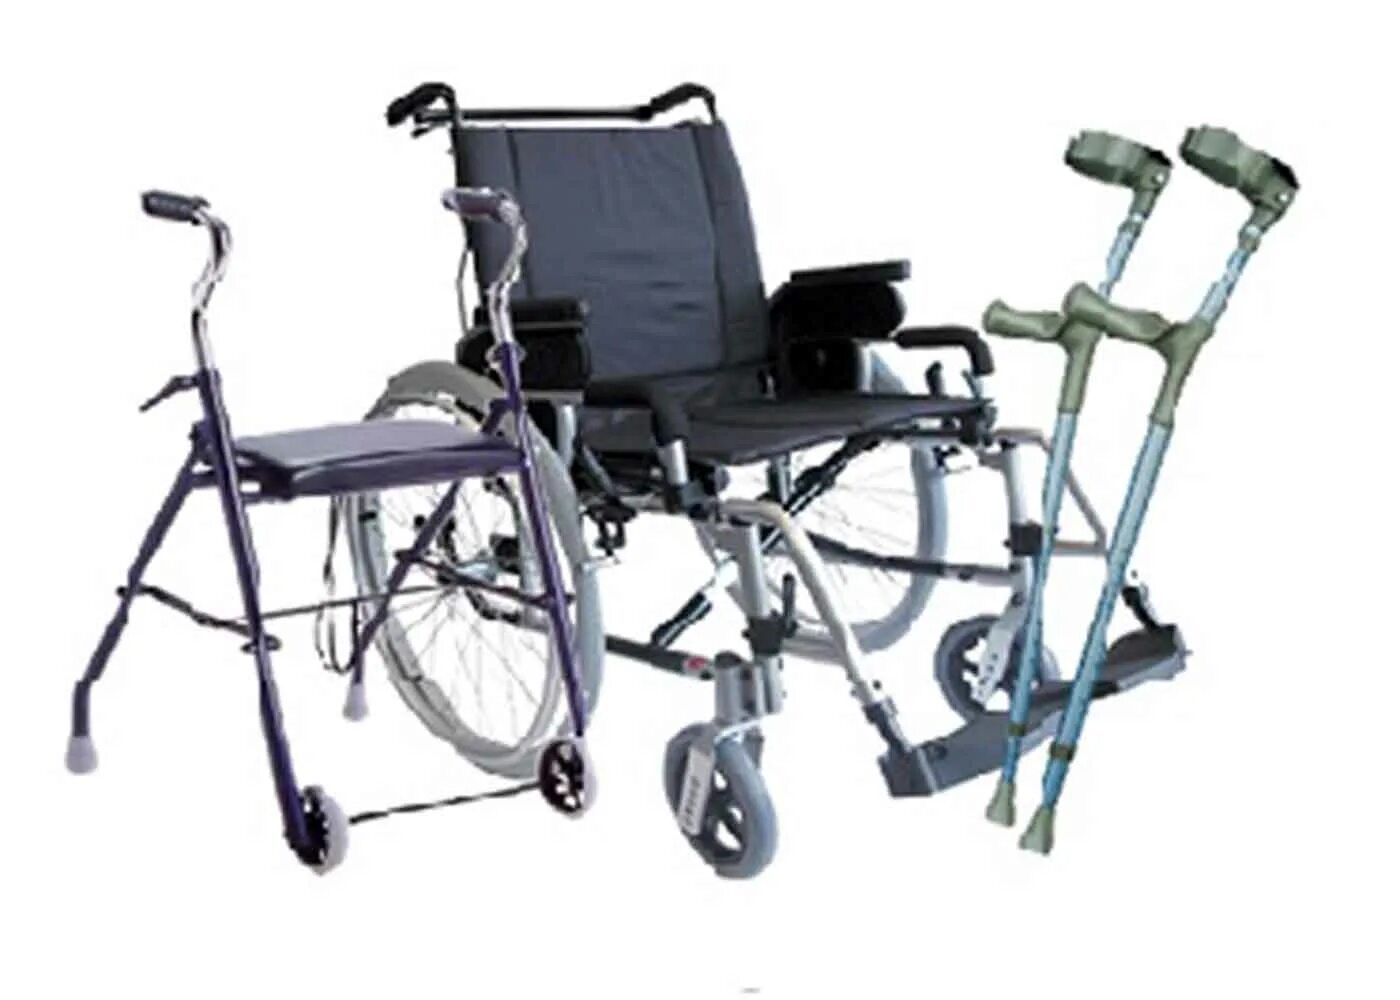 ТСР В реабилитации. Обеспечение ТСР инвалидов. Технические средства реабилитации для инвалидов. Технические средства реабилитации для детей инвалидов.